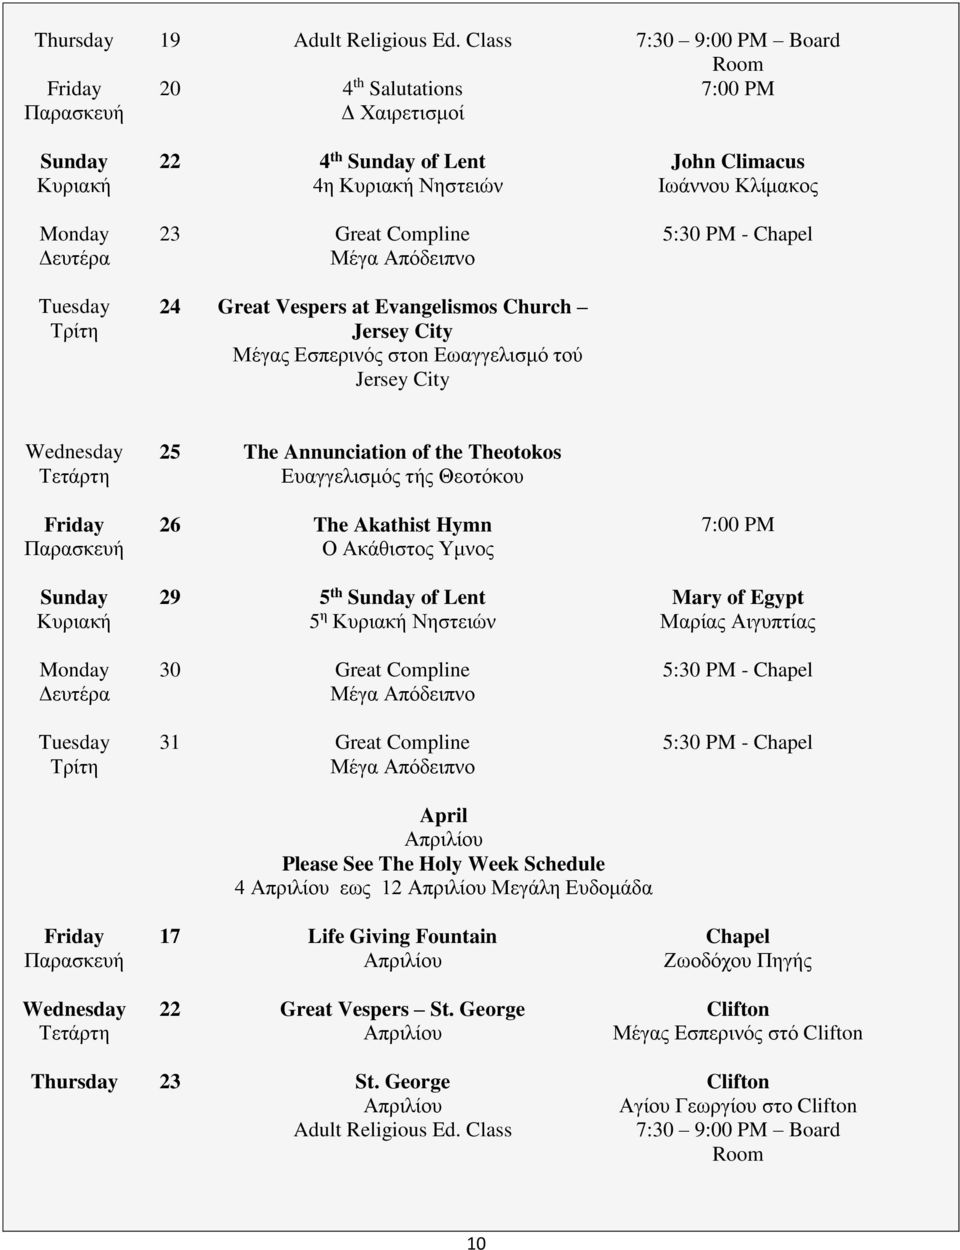 Απόδειπνο 24 Great Vespers at Evangelismos Church Jersey City Μέγας Εσπερινός στοn Εωαγγελισμό τού Jersey City John Climacus Ιωάννου Κλίμακος 5:30 PM - Chapel Wednesday Τετάρτη Friday Παρασκευή